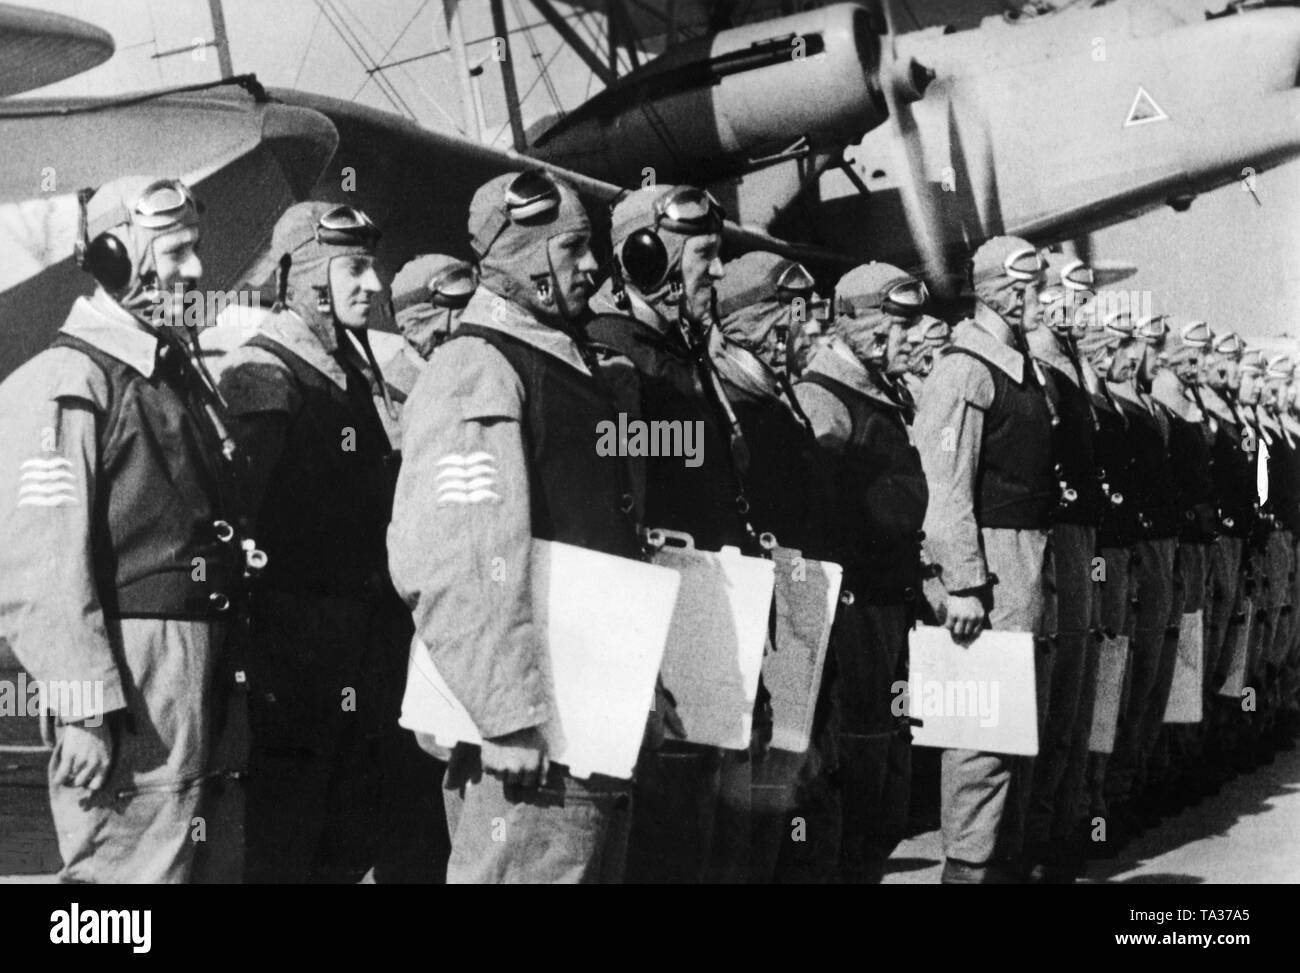 Film Szene aus dem kurzen 'Documentary' namens 'Flieger zur Siehe' aus (1938/1939), einen Propagandistischen Kurzfilm. Das Bild zeigt die Crew, die für die Erteilung von Aufträgen gefüttert. Das Bild wurde im Jahr 1939 in der Zeitung "filmwelt" veröffentlicht. Stockfoto